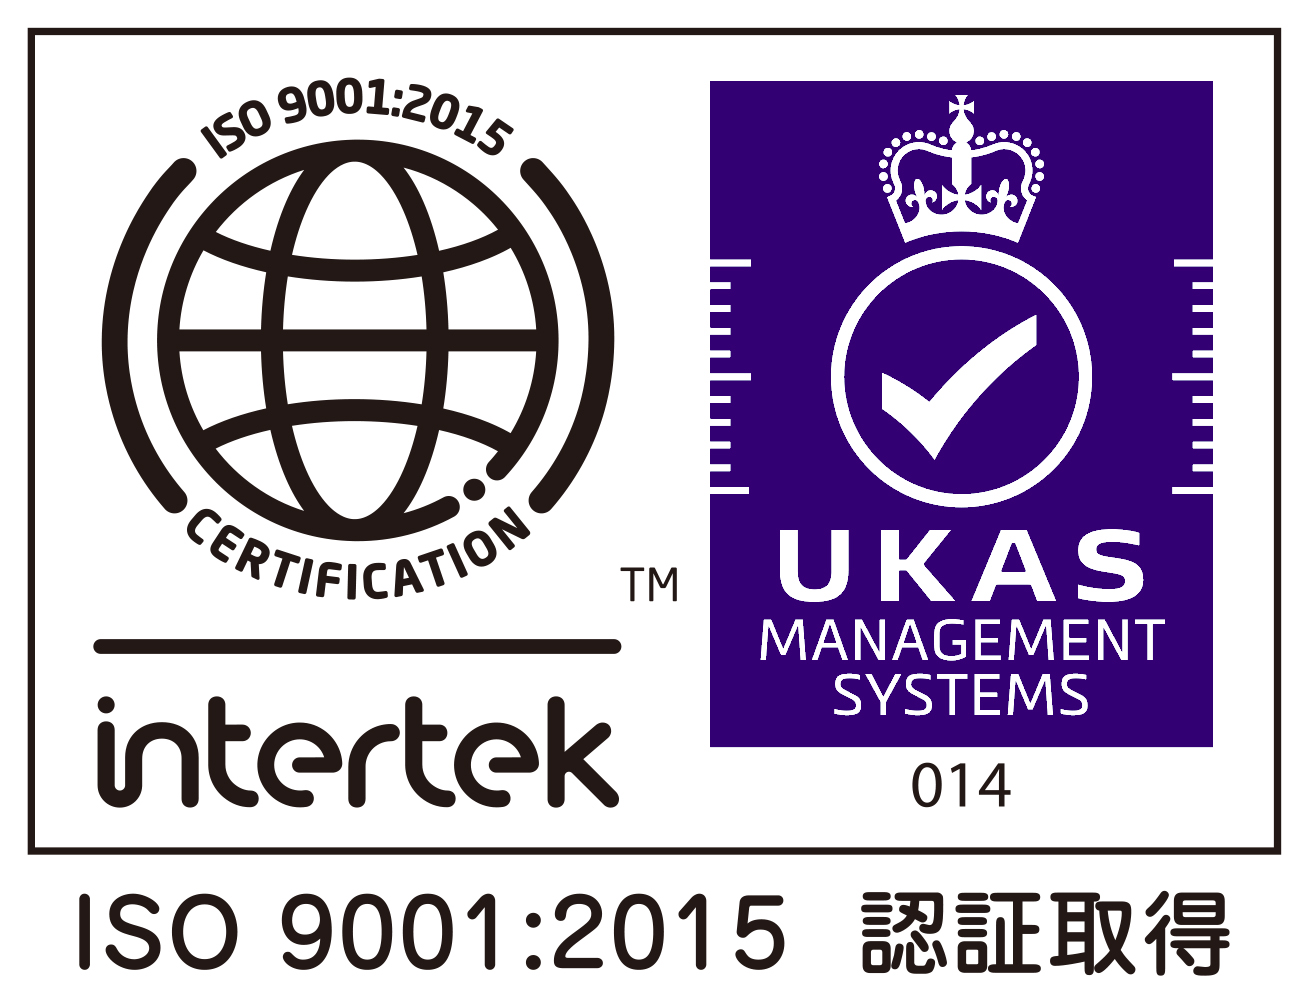 ISO90012015UKASpurple.jpg